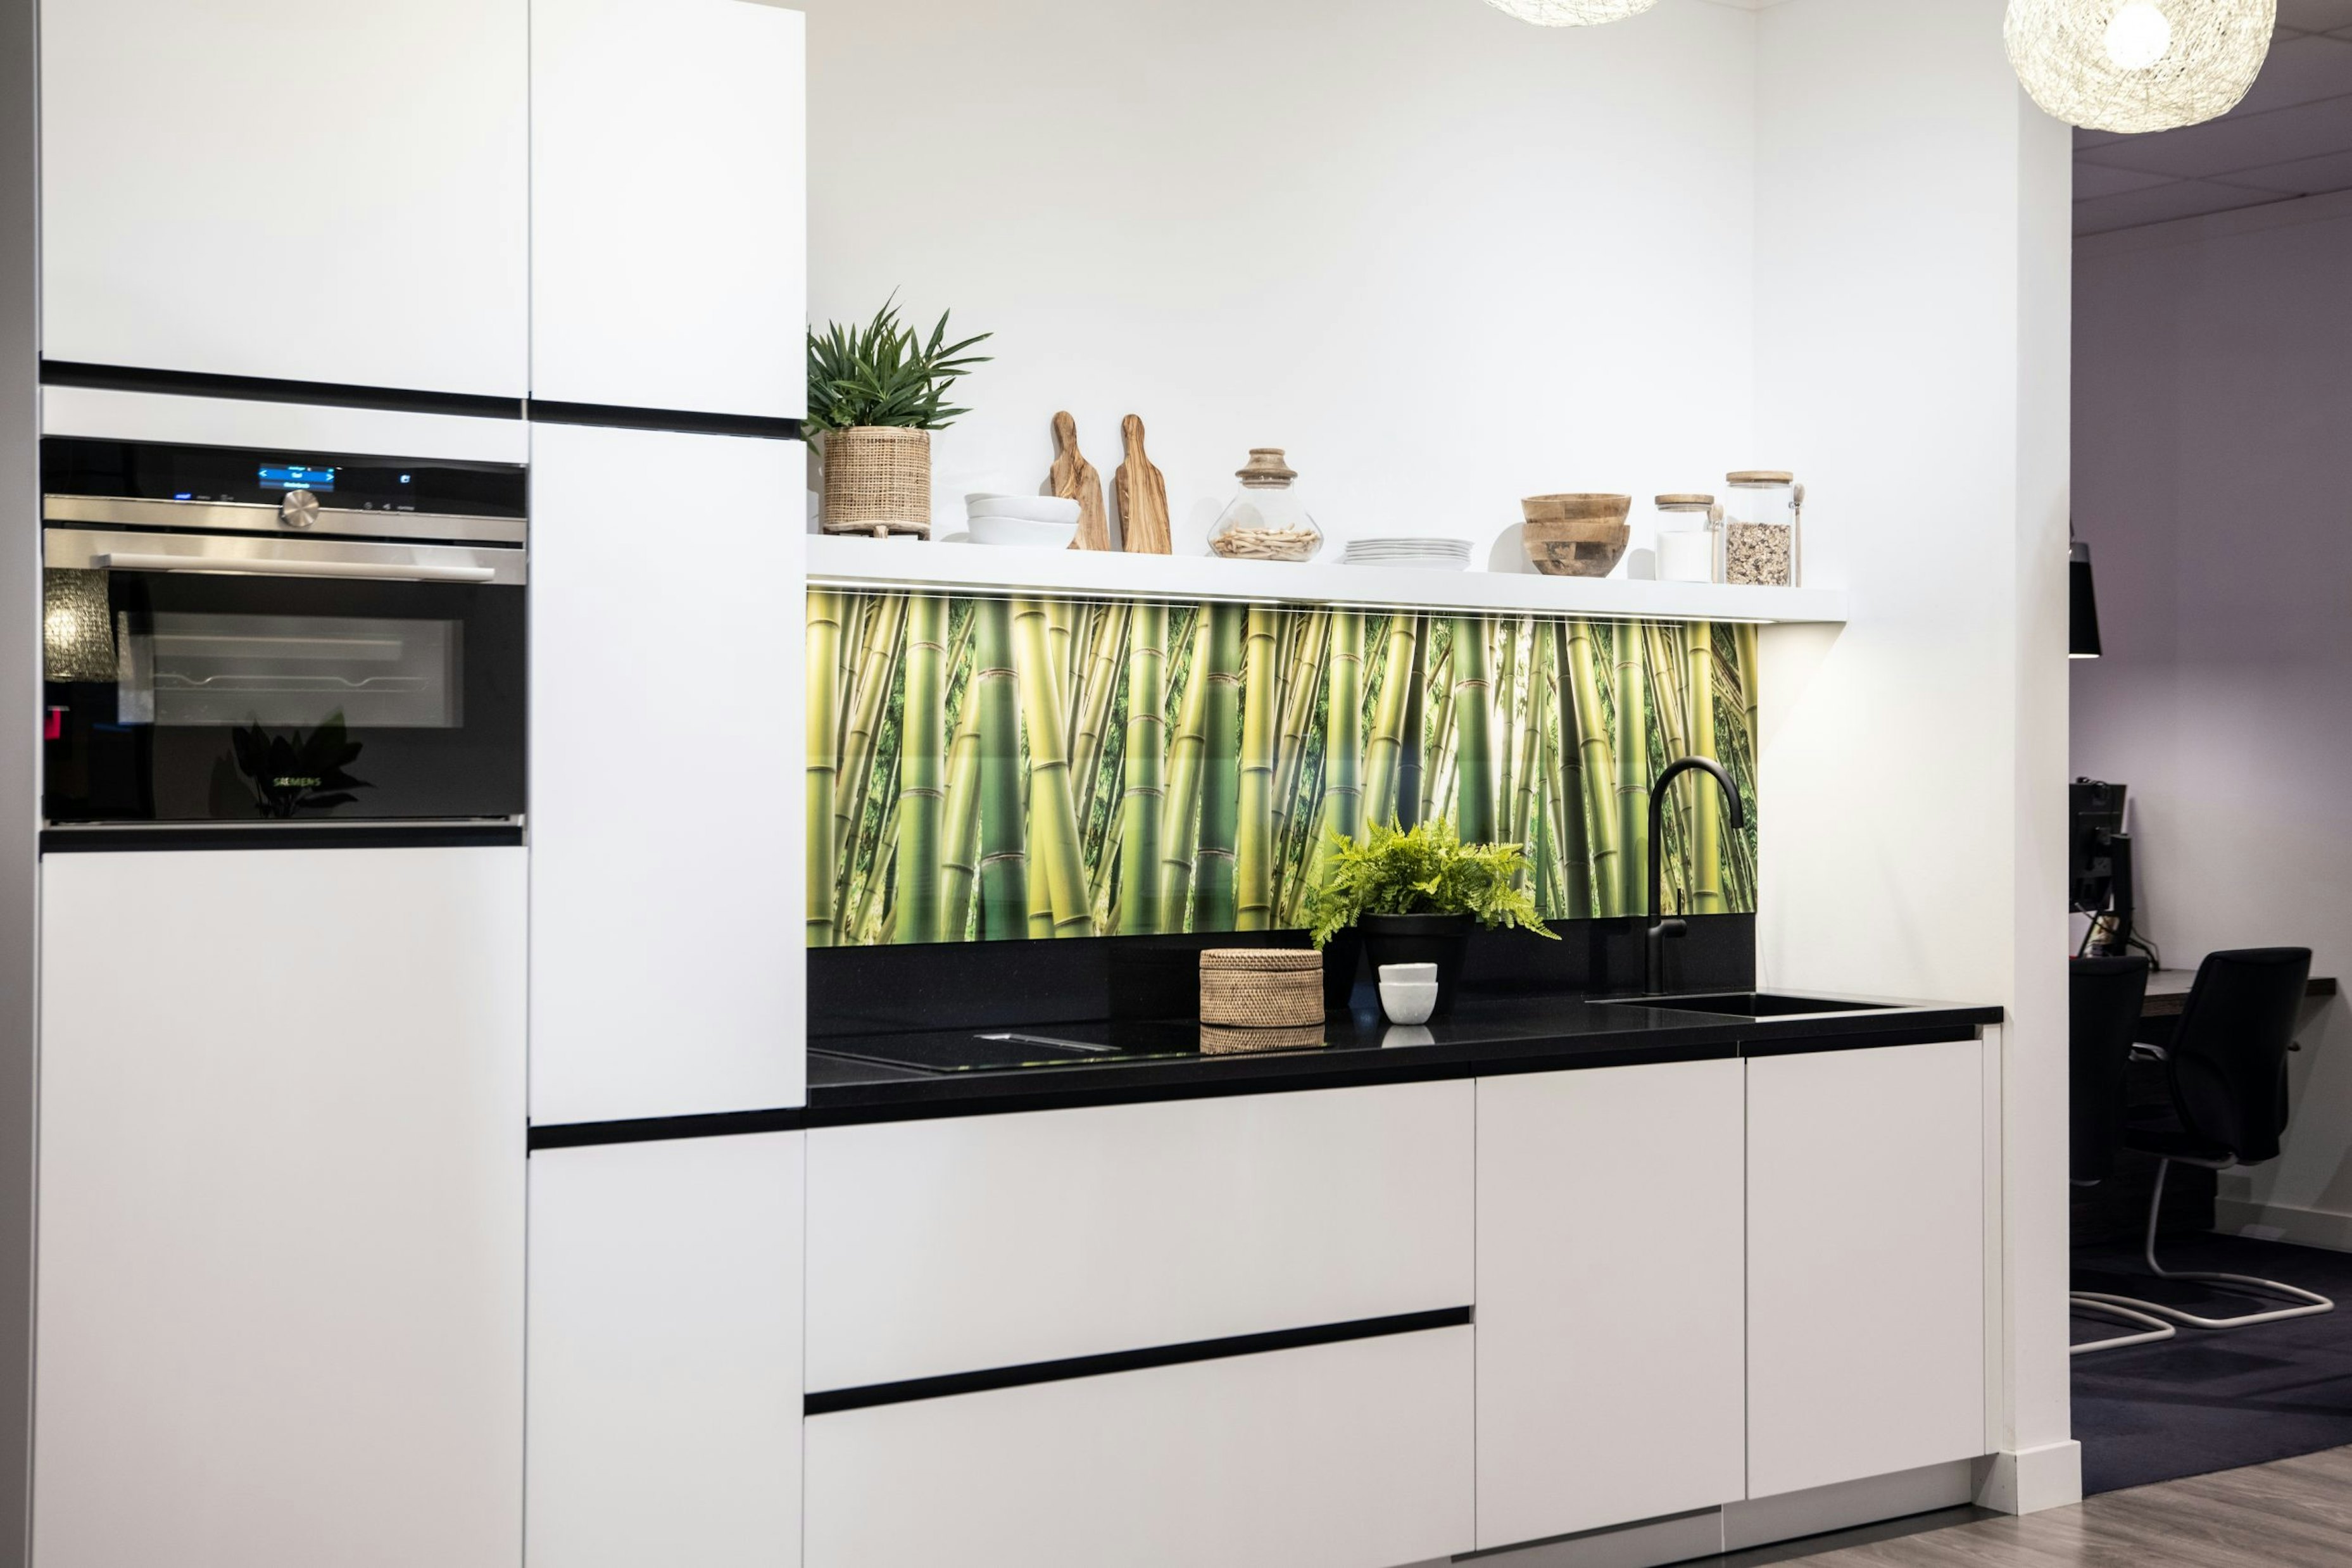 De keuken beschikt over een apparaten set van het merk Siemens - Bemmel & Kroon keukens